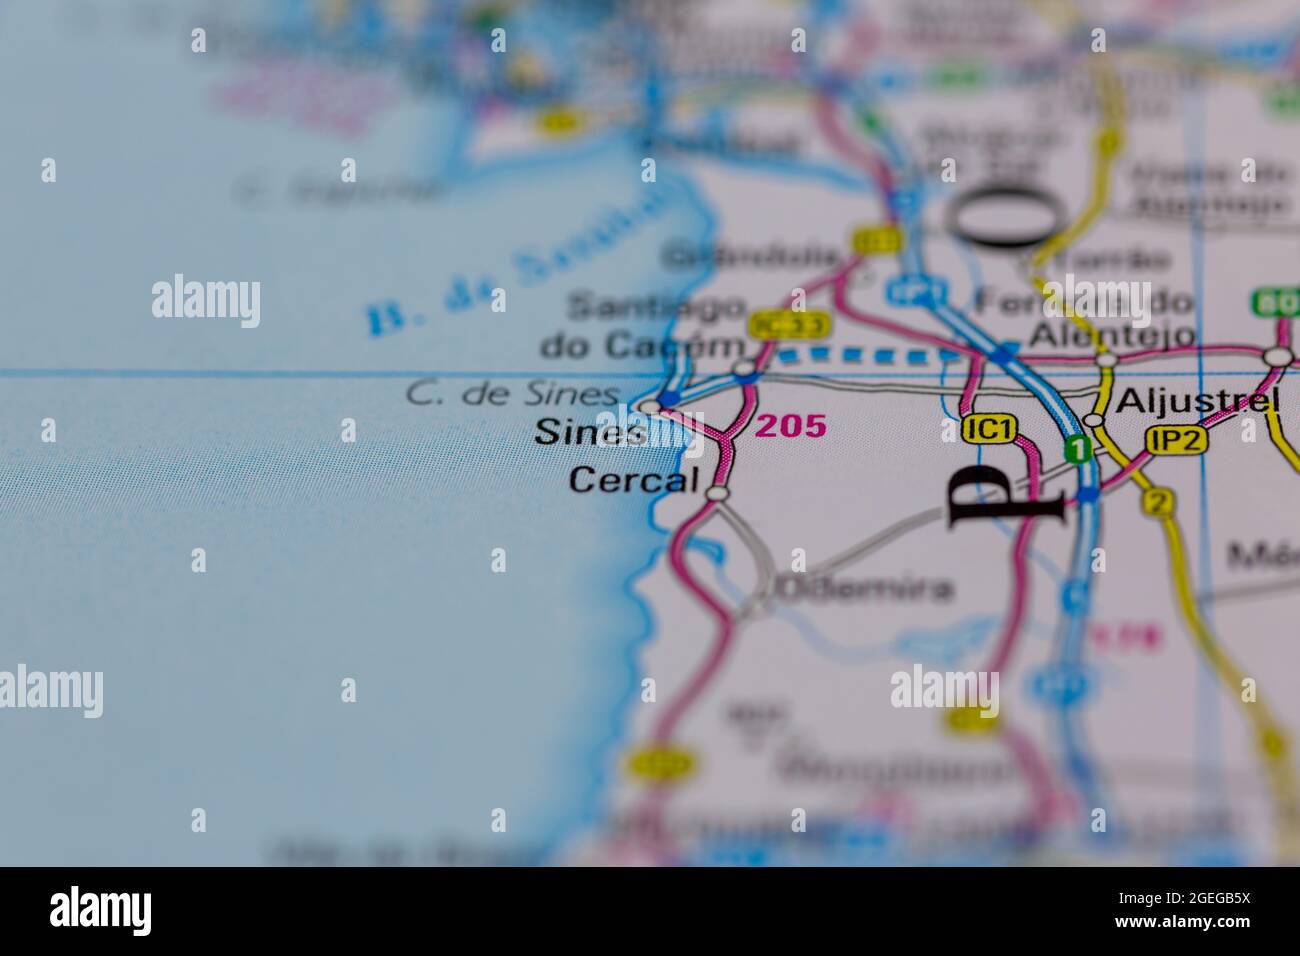 Sines Portugal sur une carte routière ou une carte de la géographie Banque D'Images